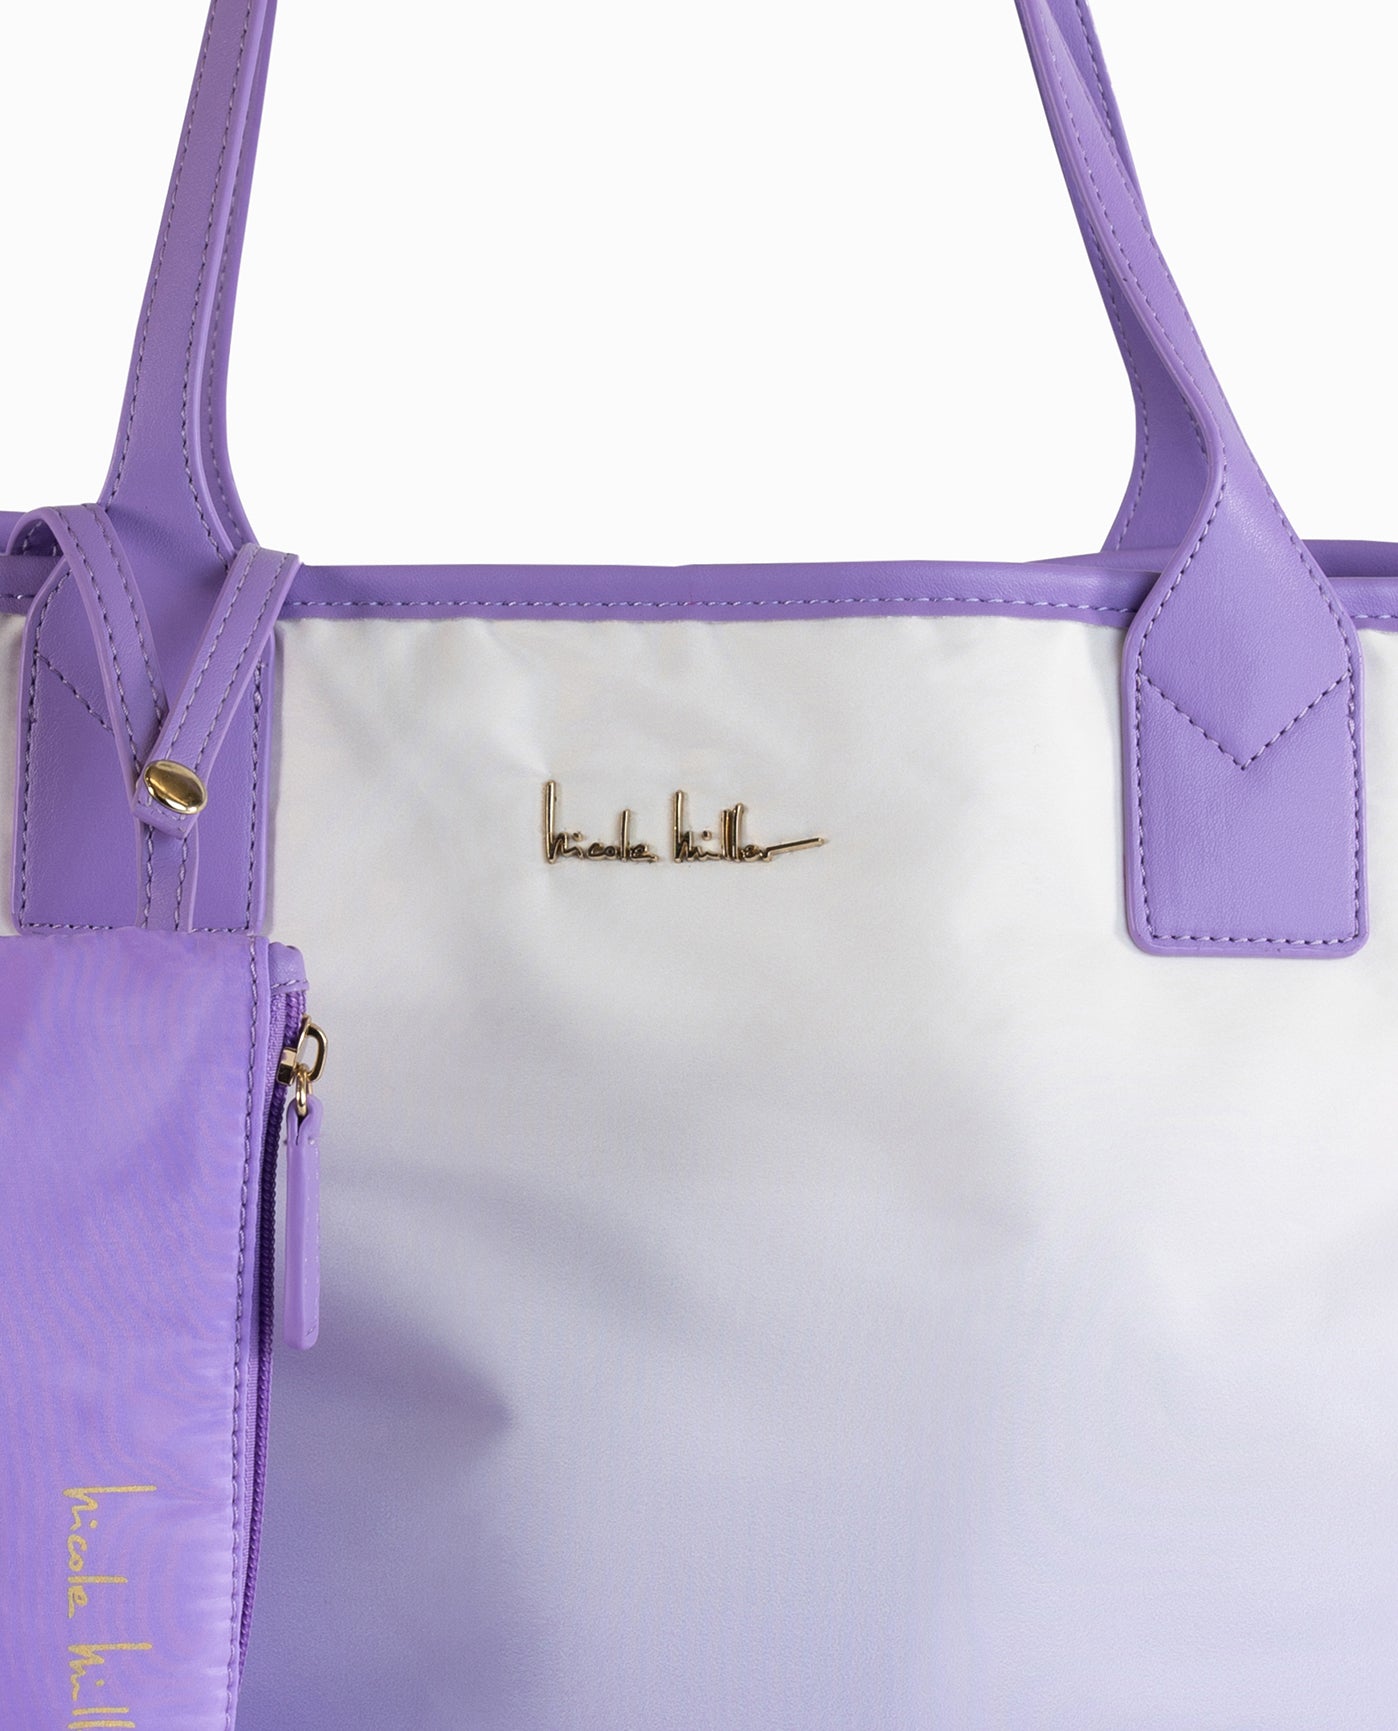 Nicole Miller Handbags : Bags & Accessories - Walmart.com